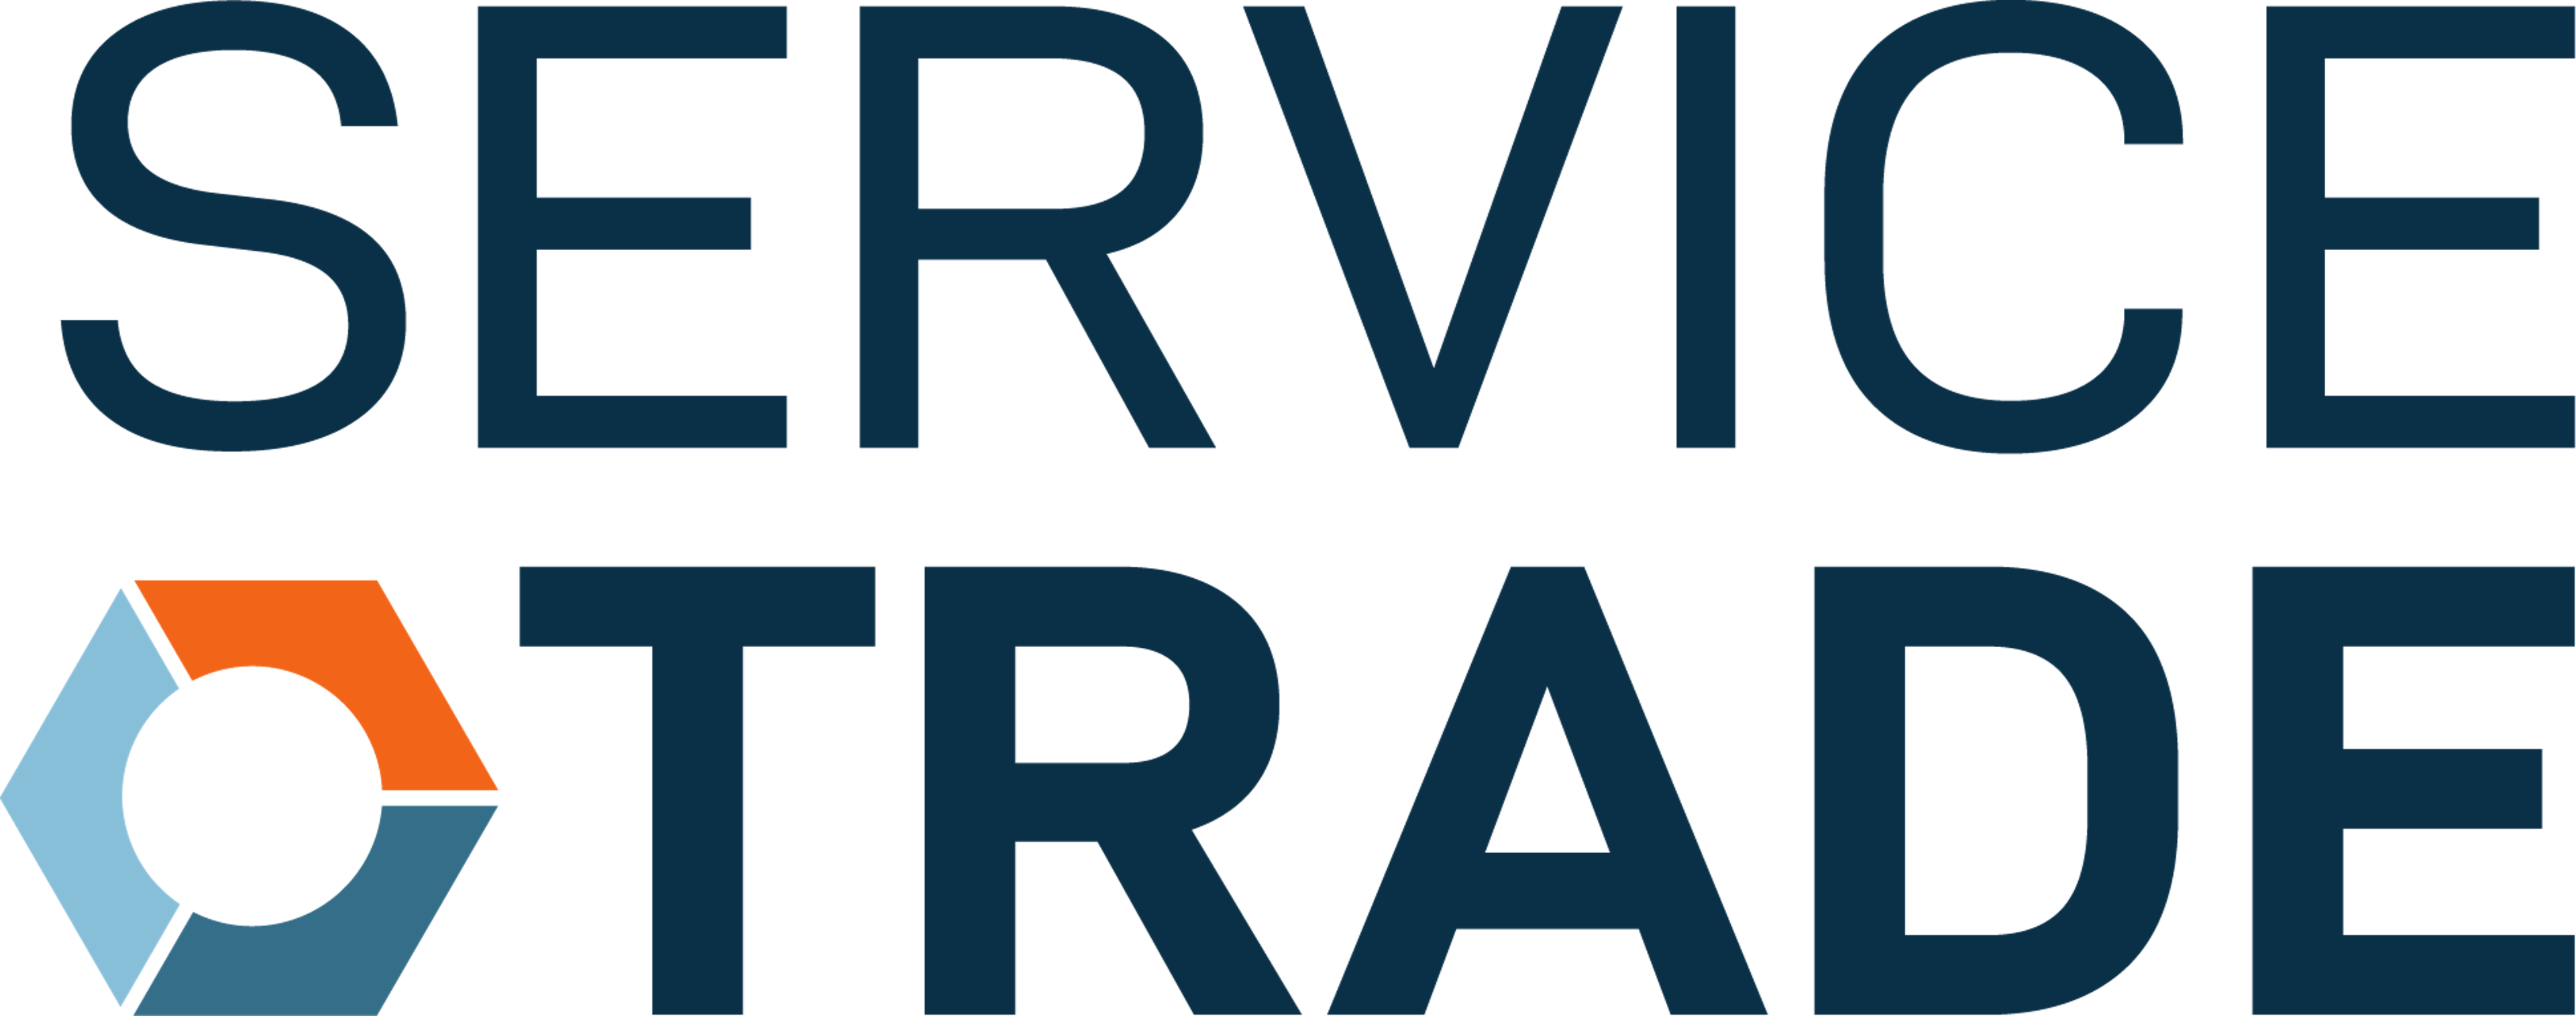 ServiceTrade Logo